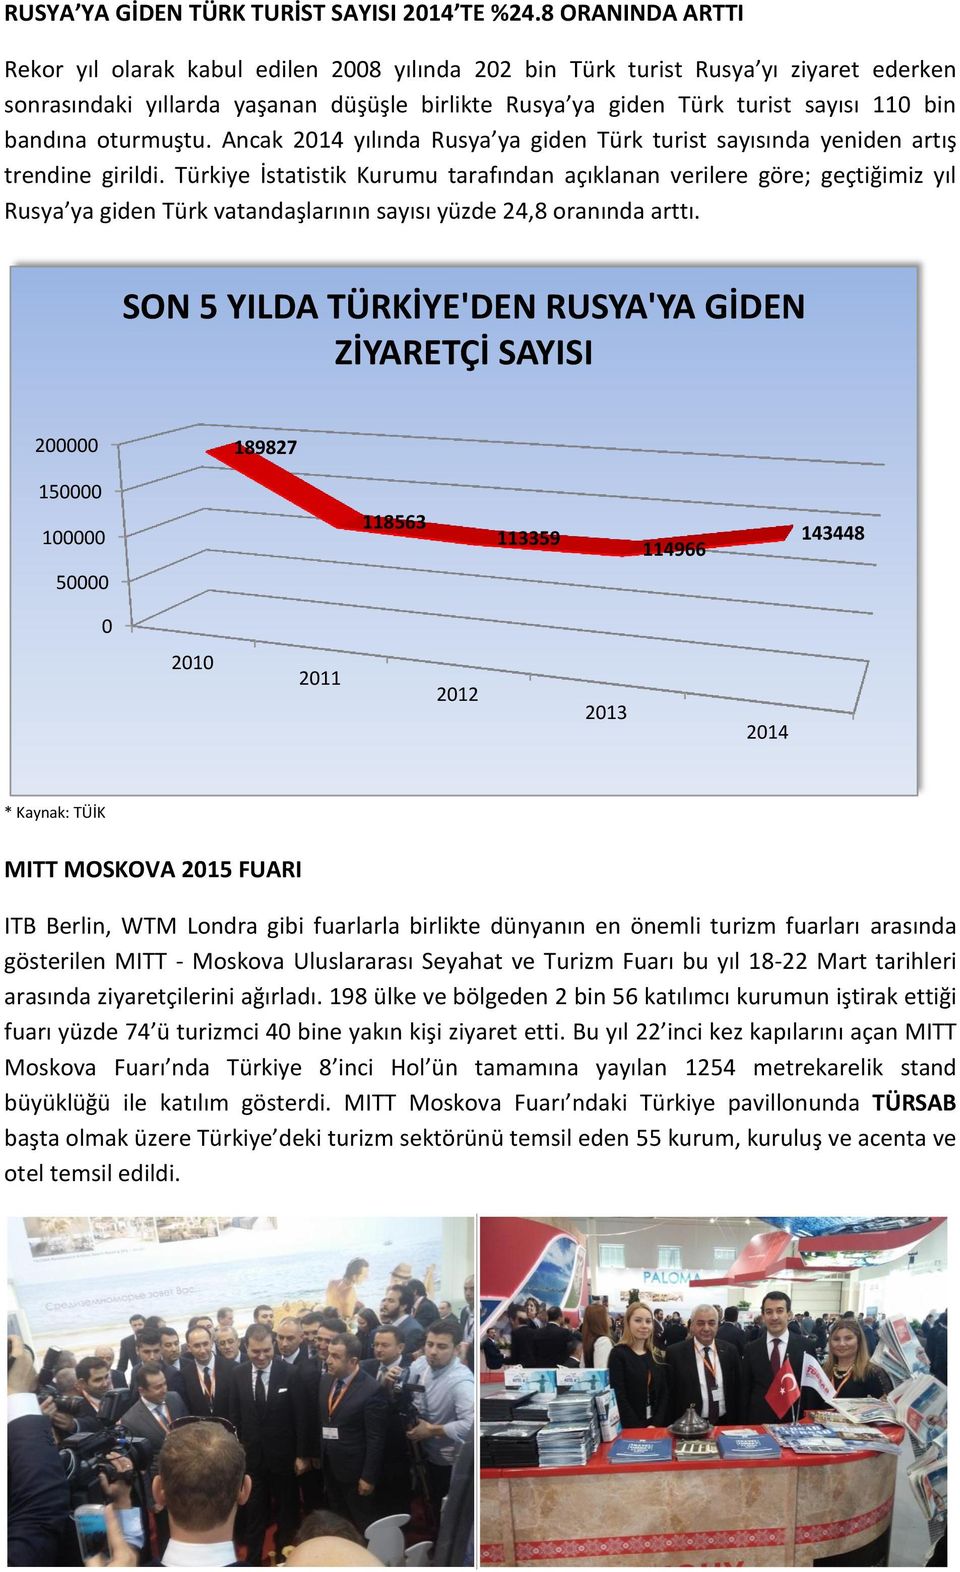 bandına oturmuştu. Ancak 2014 yılında Rusya ya giden Türk turist sayısında yeniden artış trendine girildi.